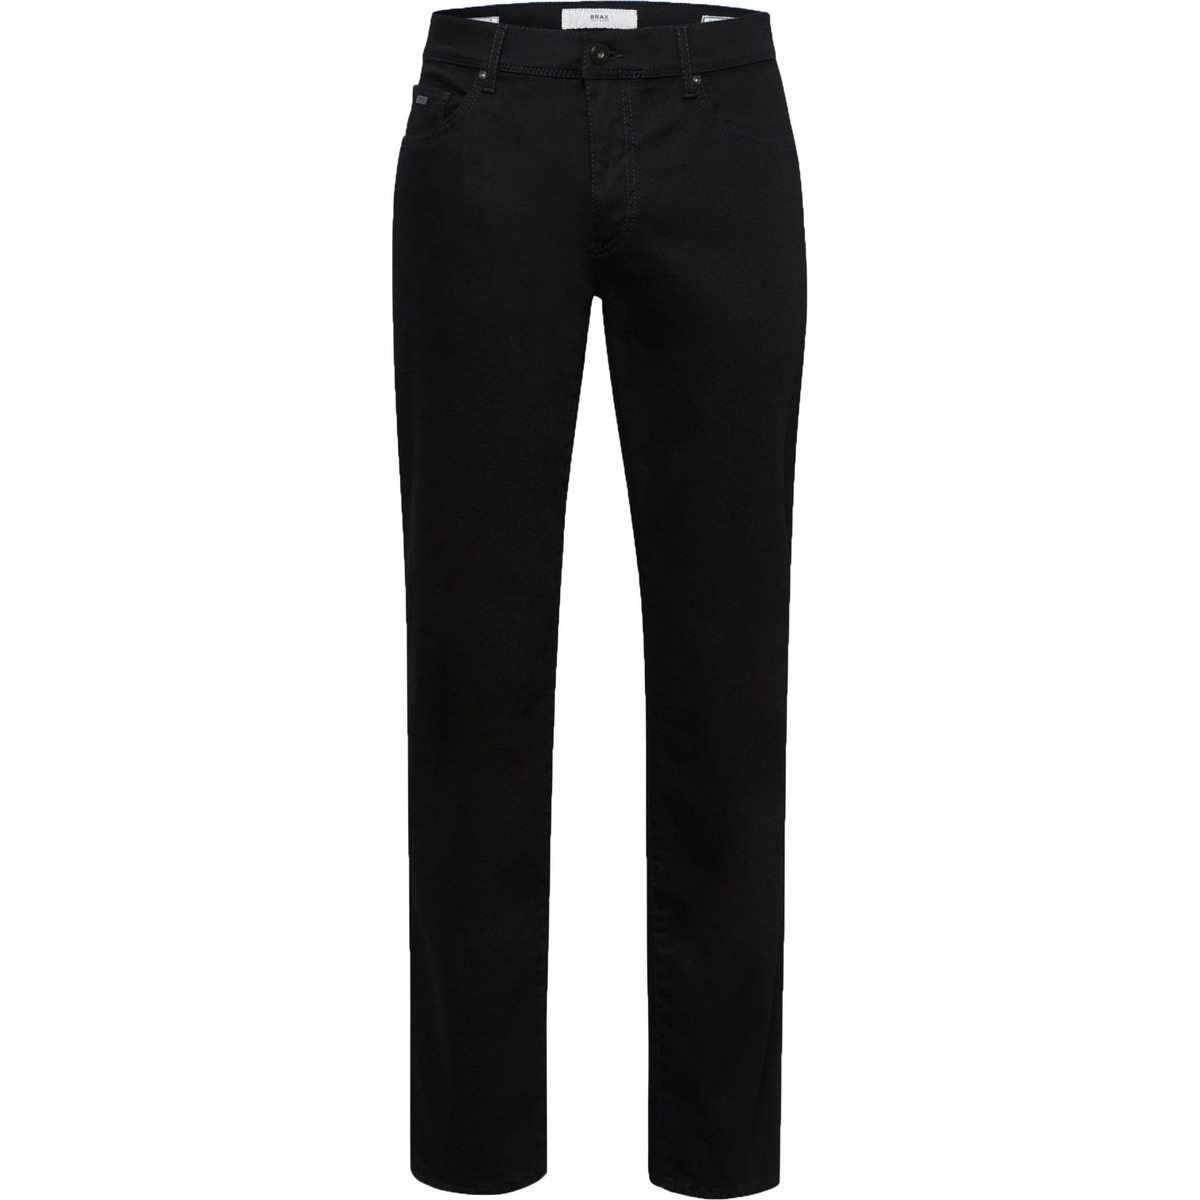 Textiel Heren Broeken / Pantalons Brax Cadiz Broek Zwart Zwart